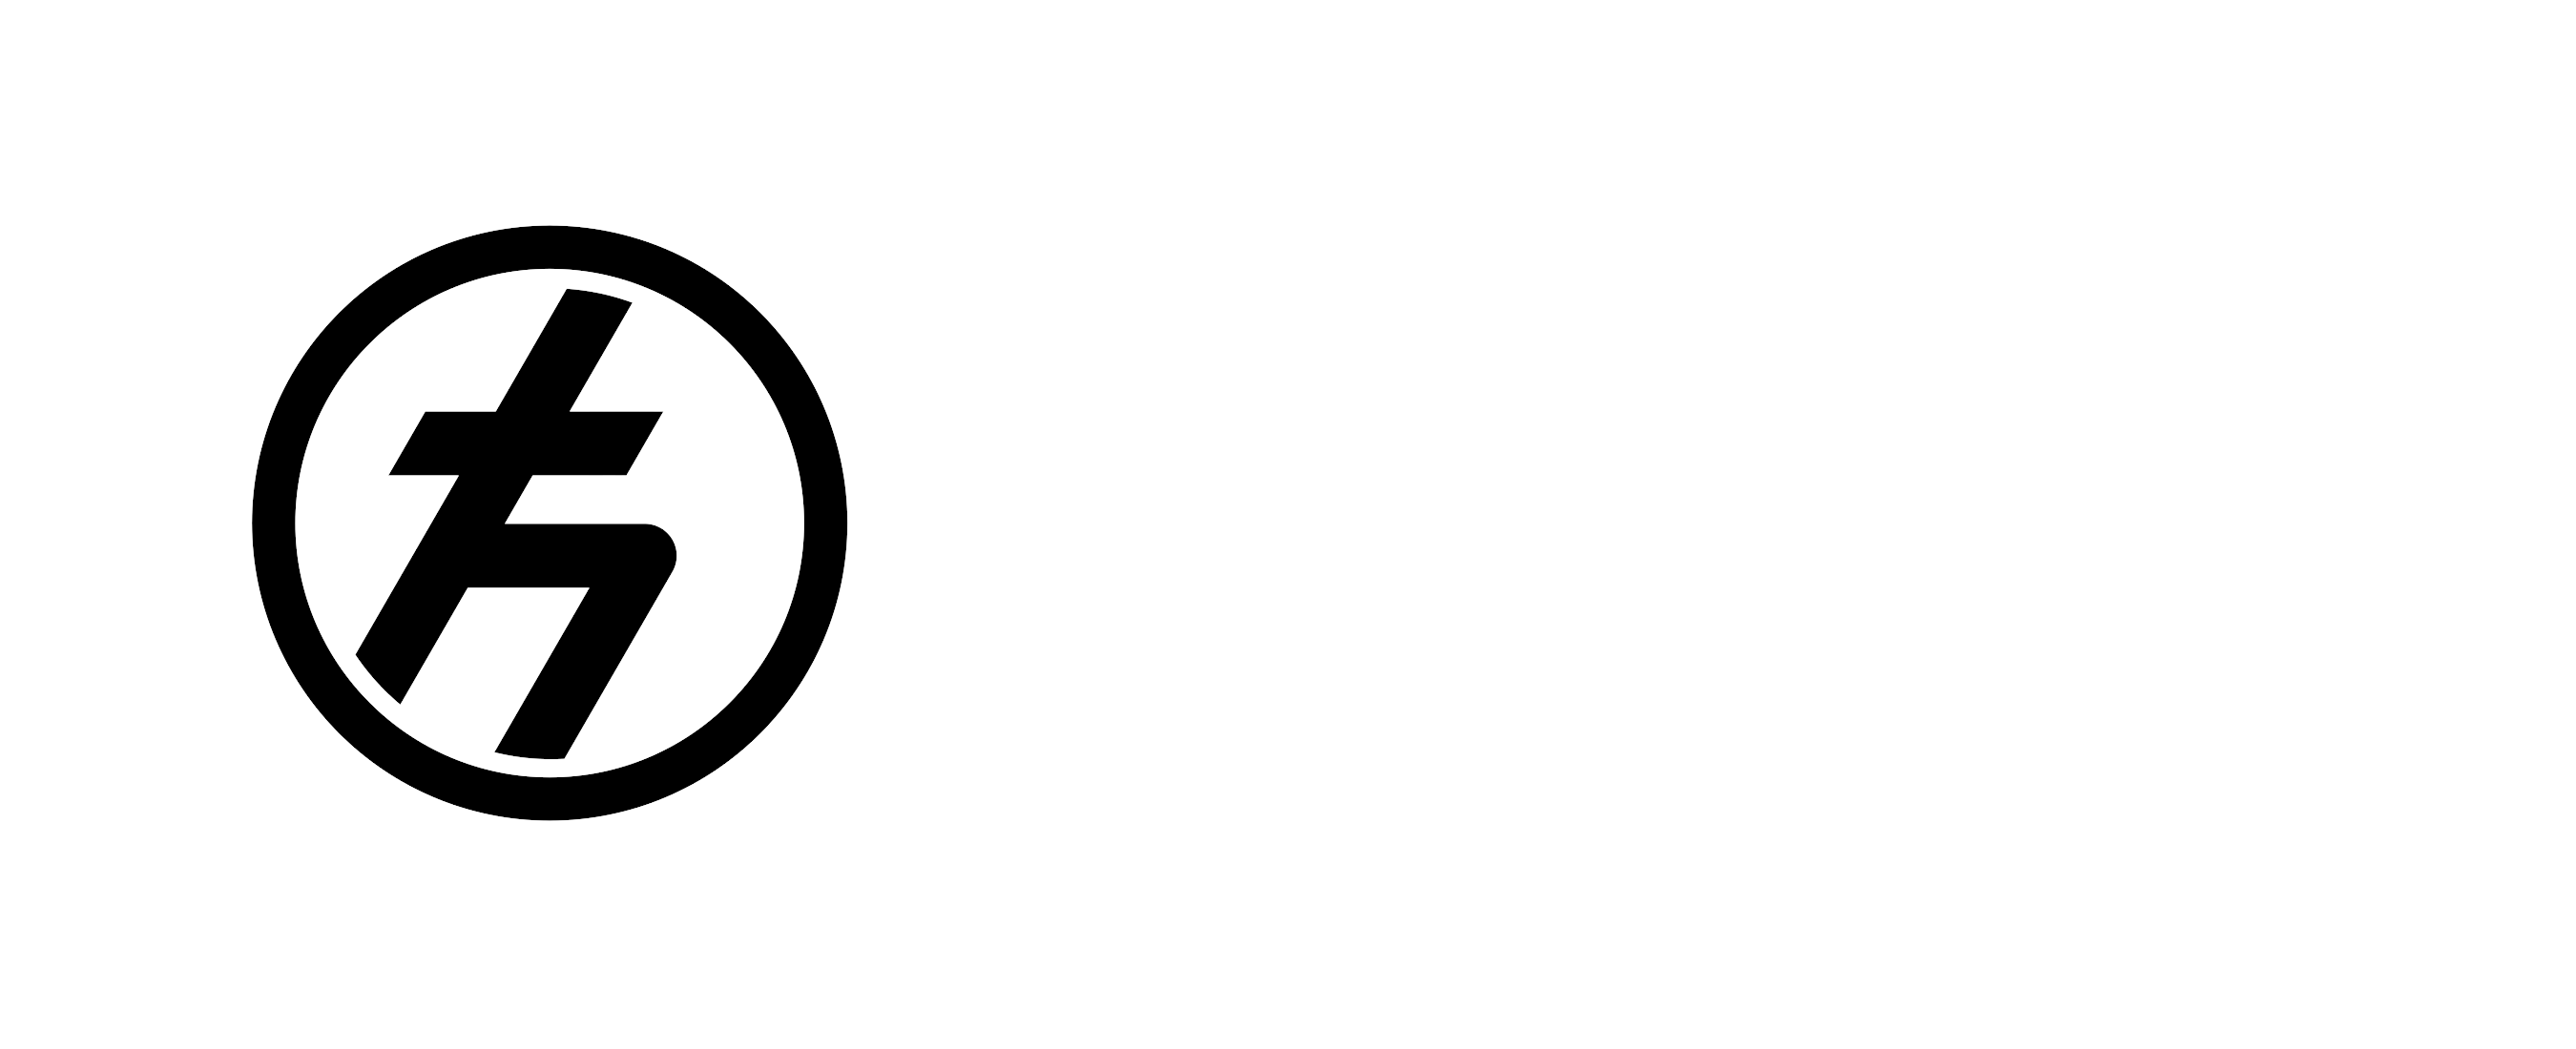 Quantum Engineering Commission